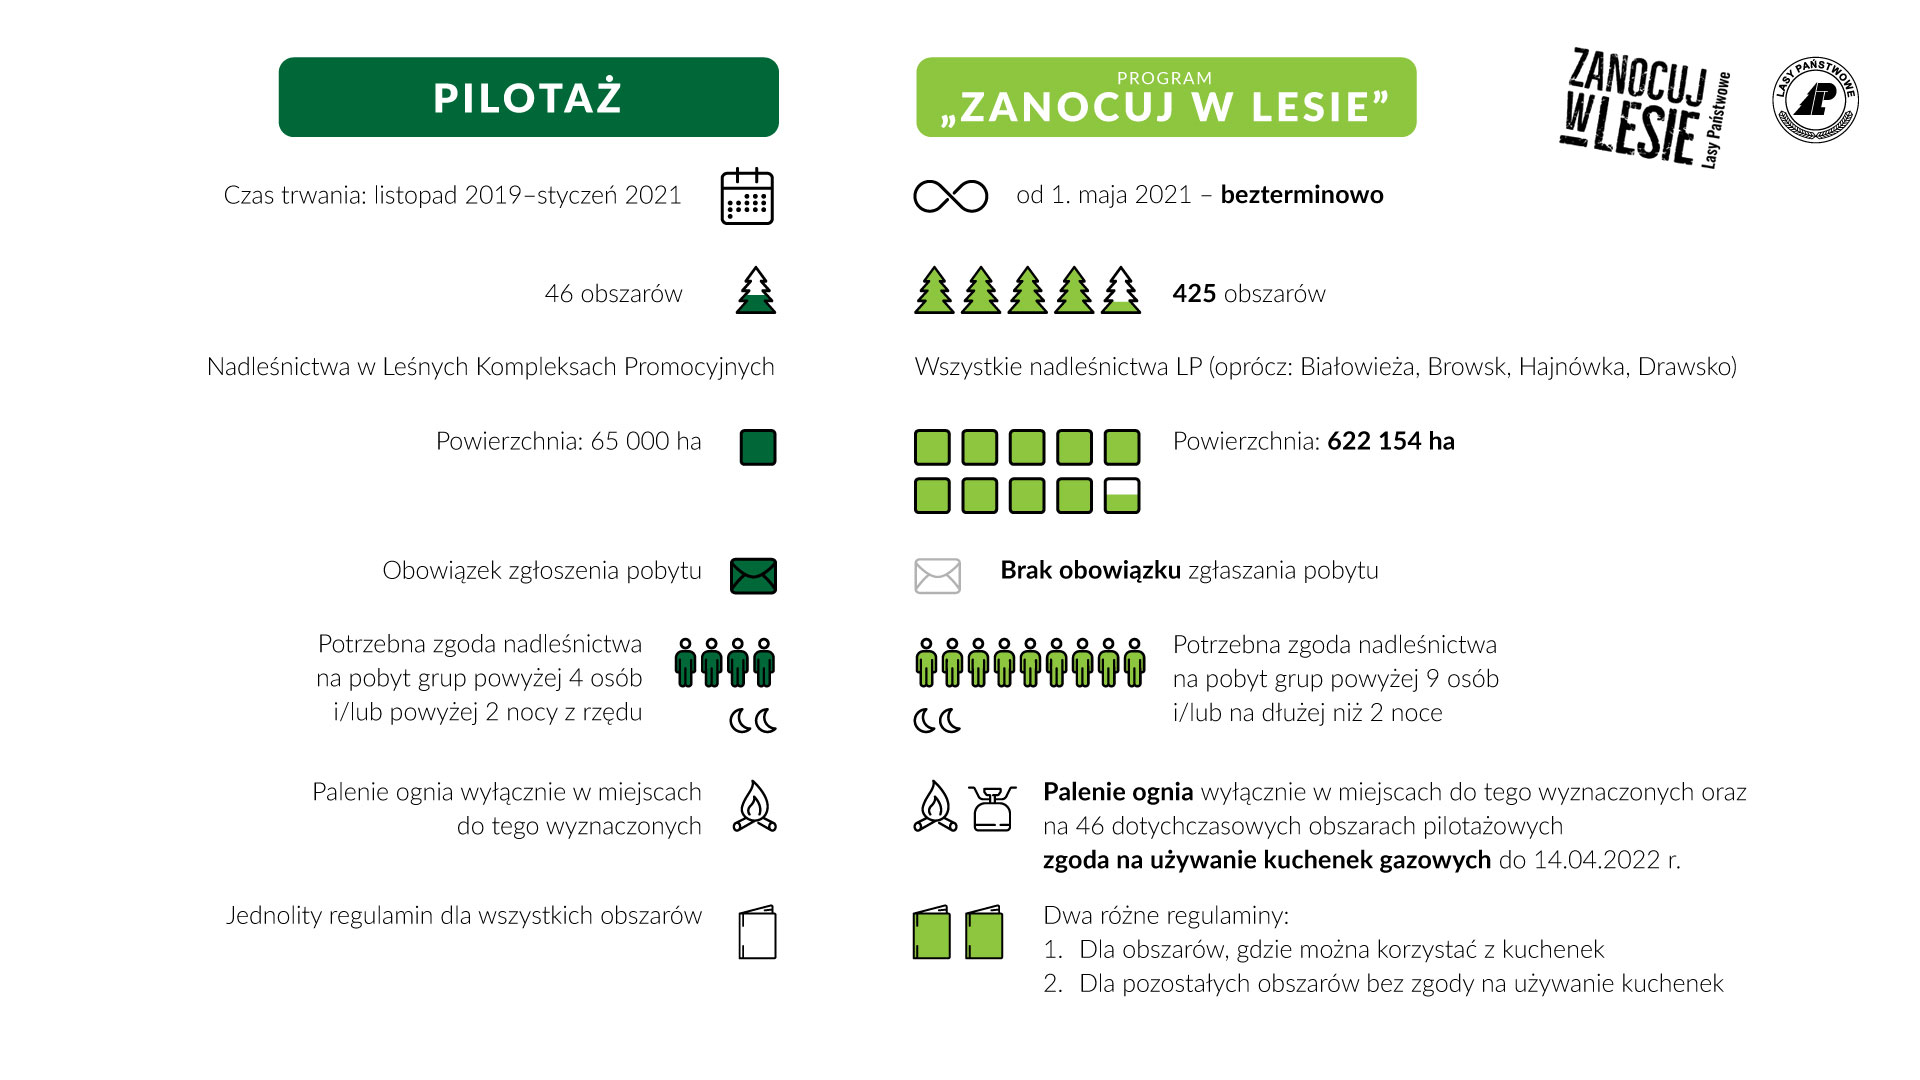 Infografika wyjaśniająca zasady programu "Zanocuj w lesie", w porównaniu do zakończonego pilotażu LP. Źródło: CILP.